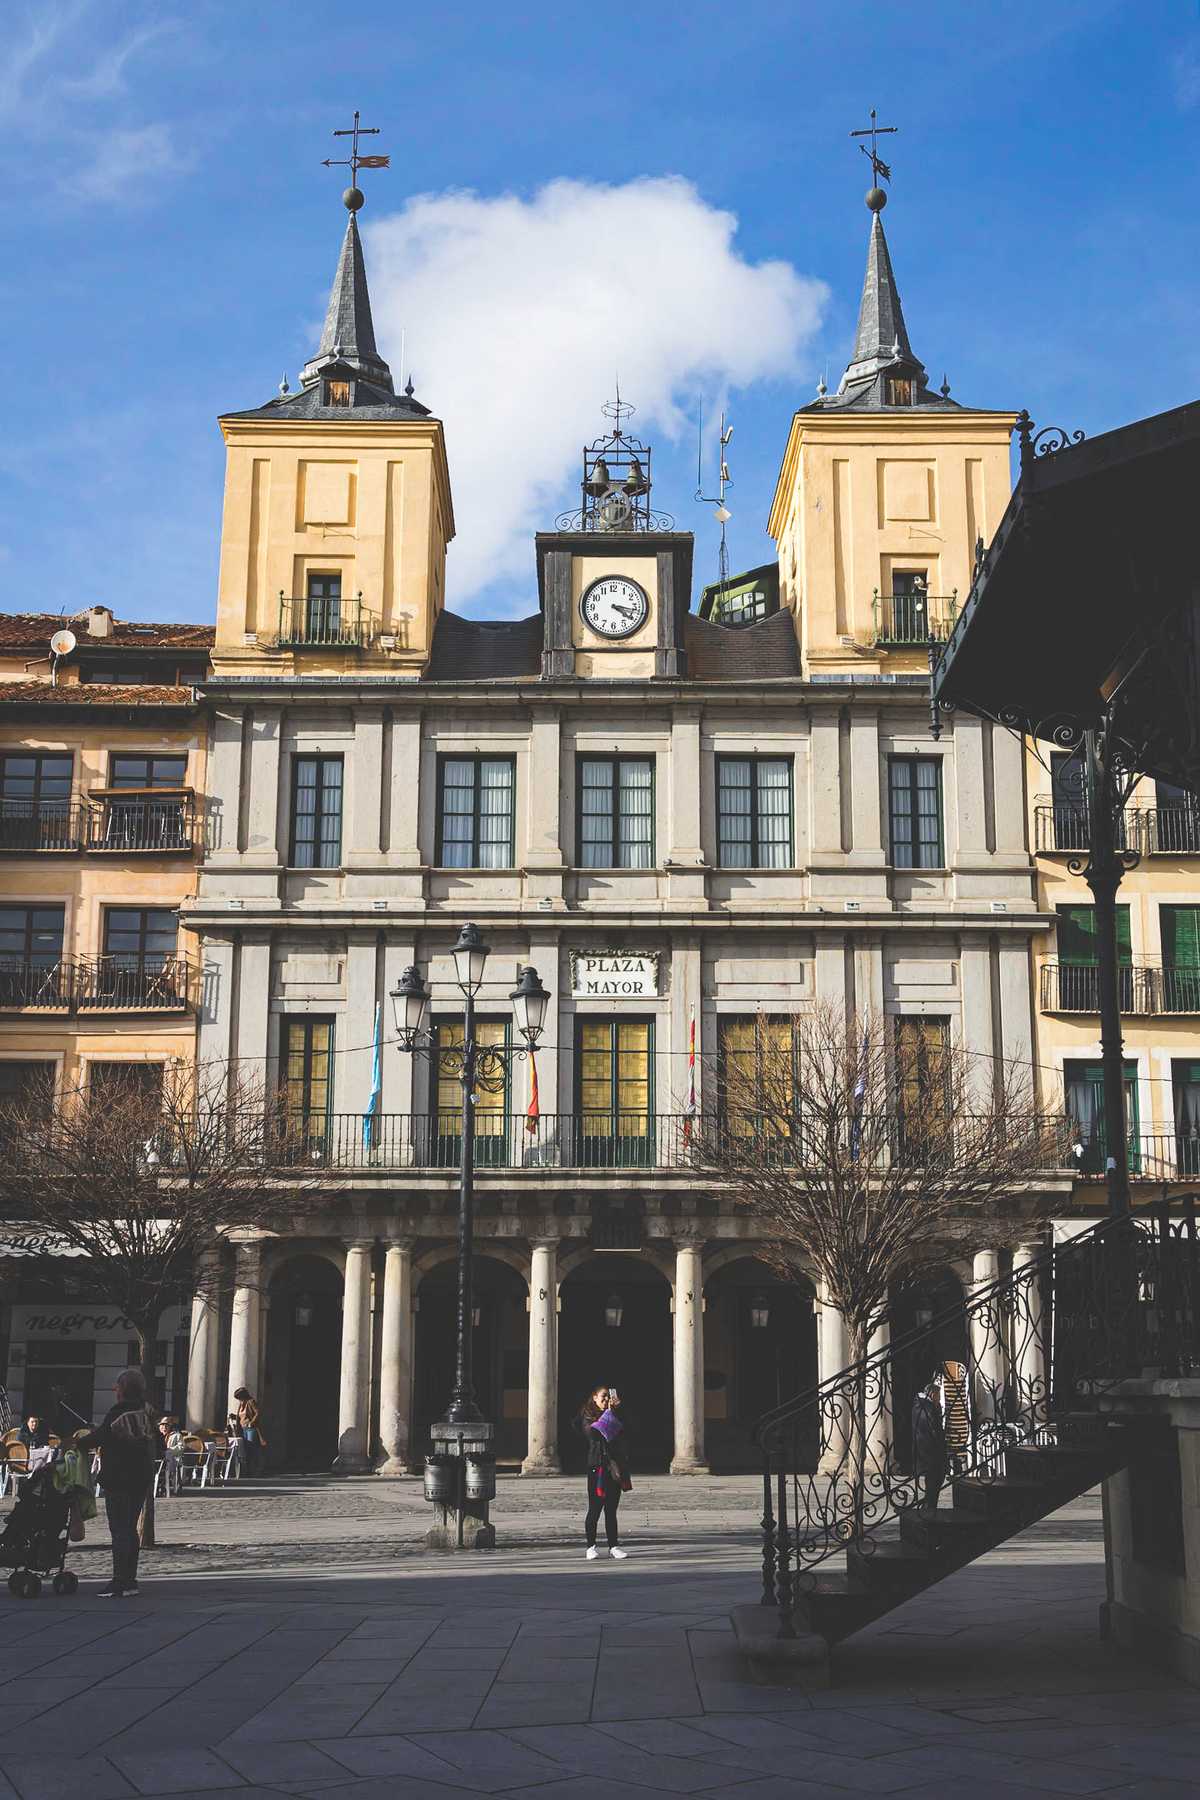 A scene from Plaza Mayor in central Segovia